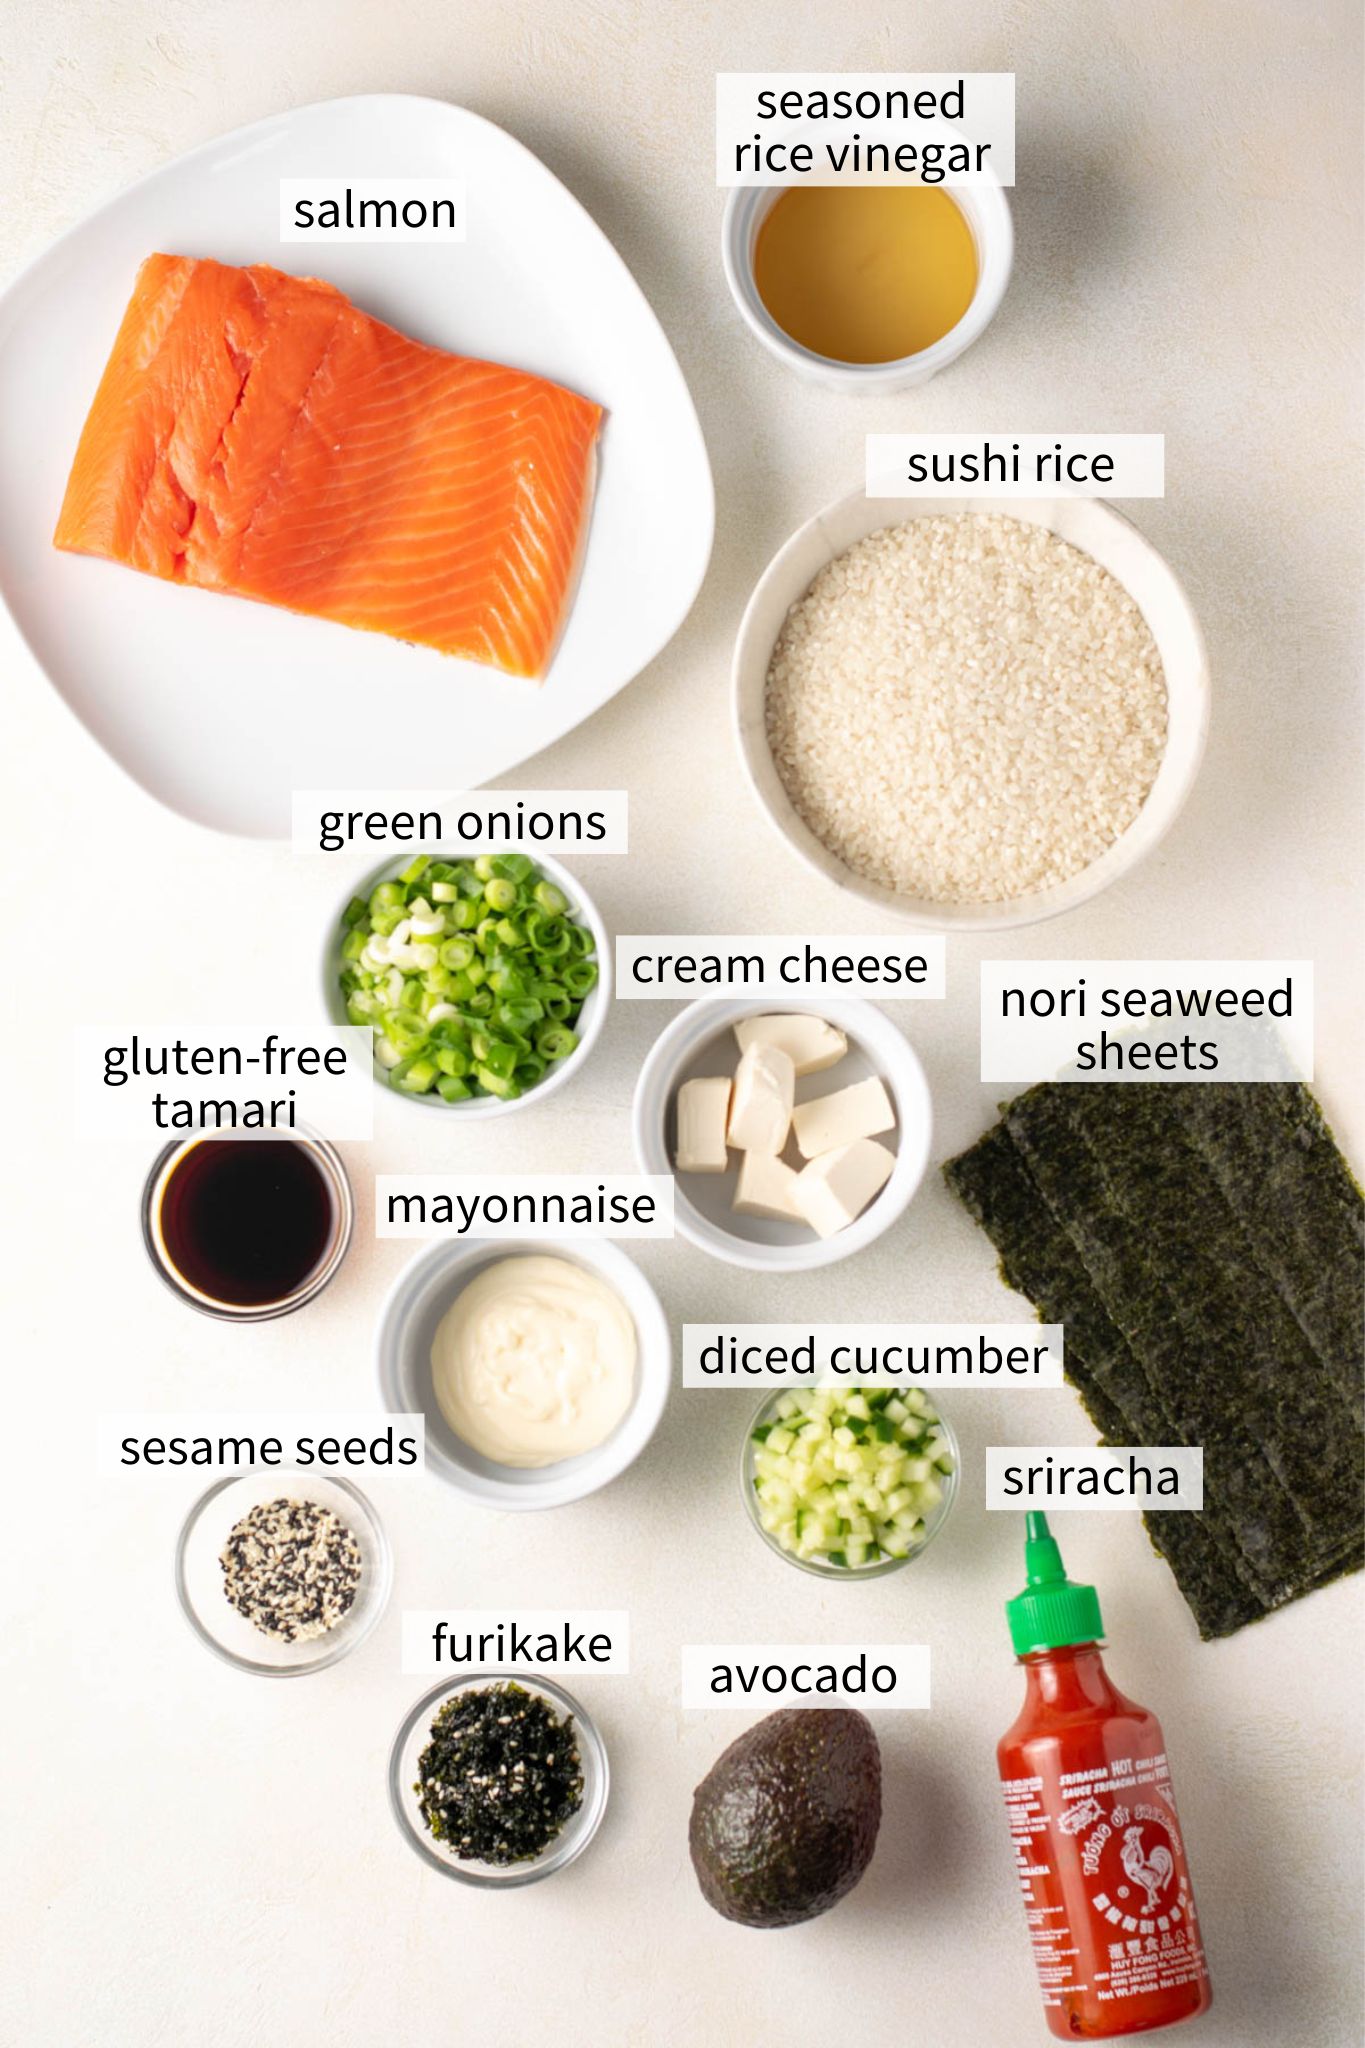 ingredients to make salmon sushi bake.